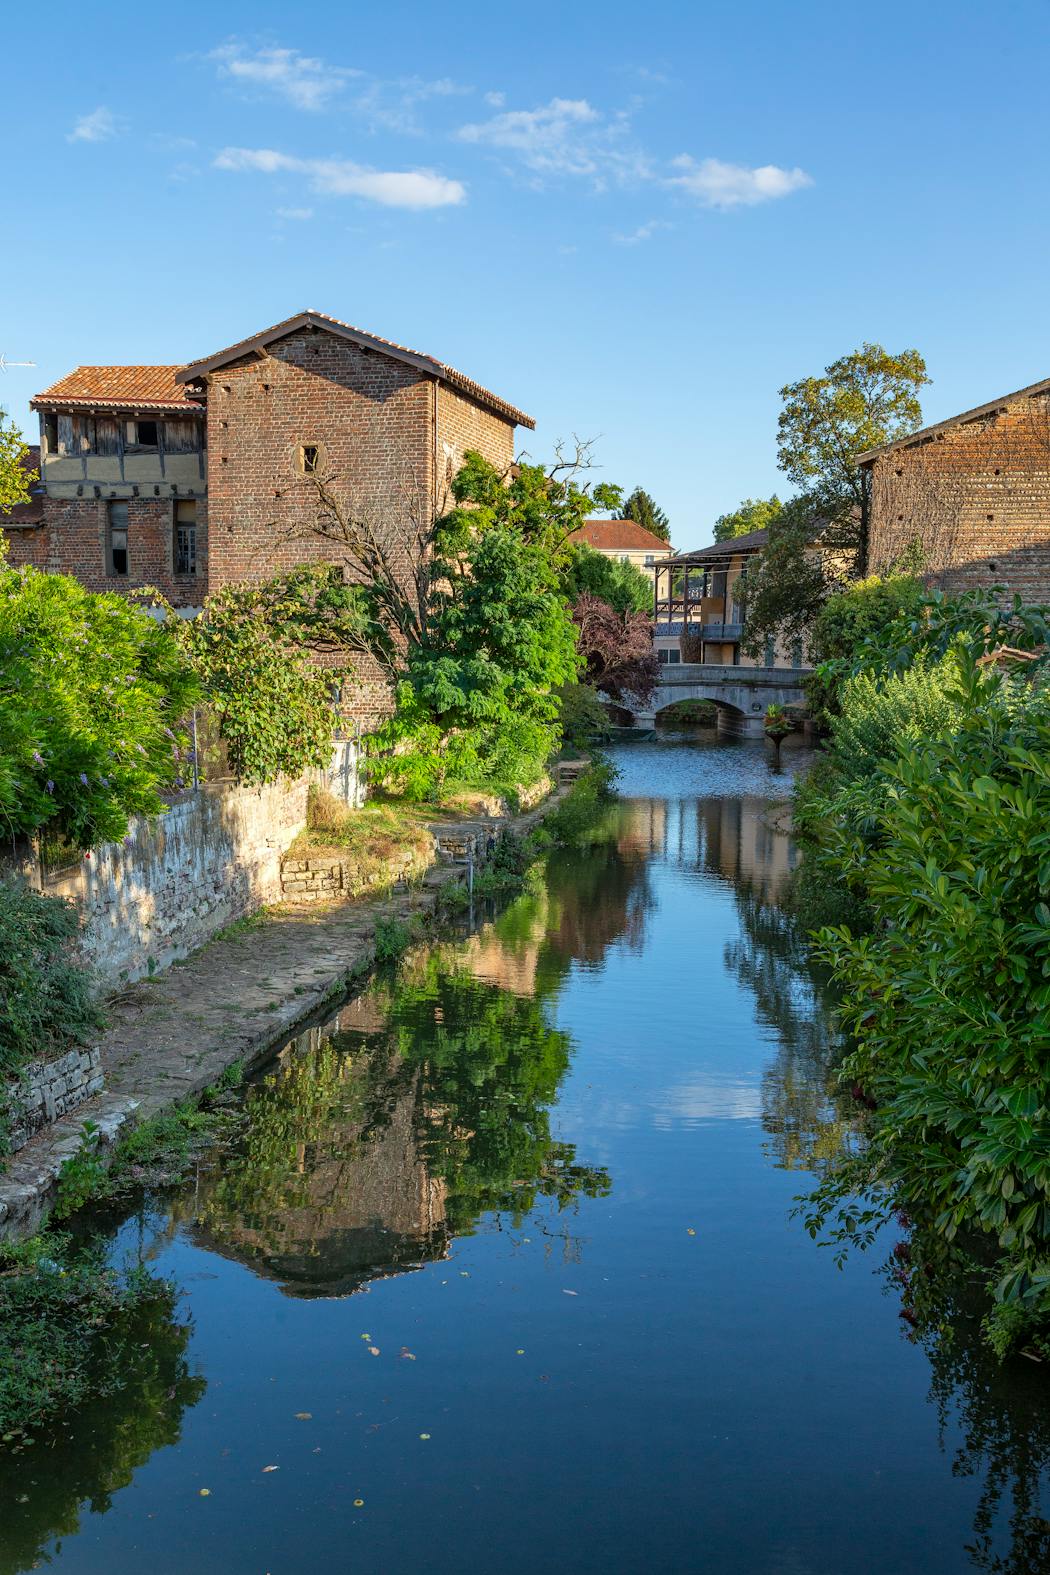 La cité médiévale de Châtillon-sur- Chalaronne, située à une heure de Lyon, paisible et fleurie, avec ses maisons à colombages, ses ponts suspendus et ses magnifiques halles du xve siècle.